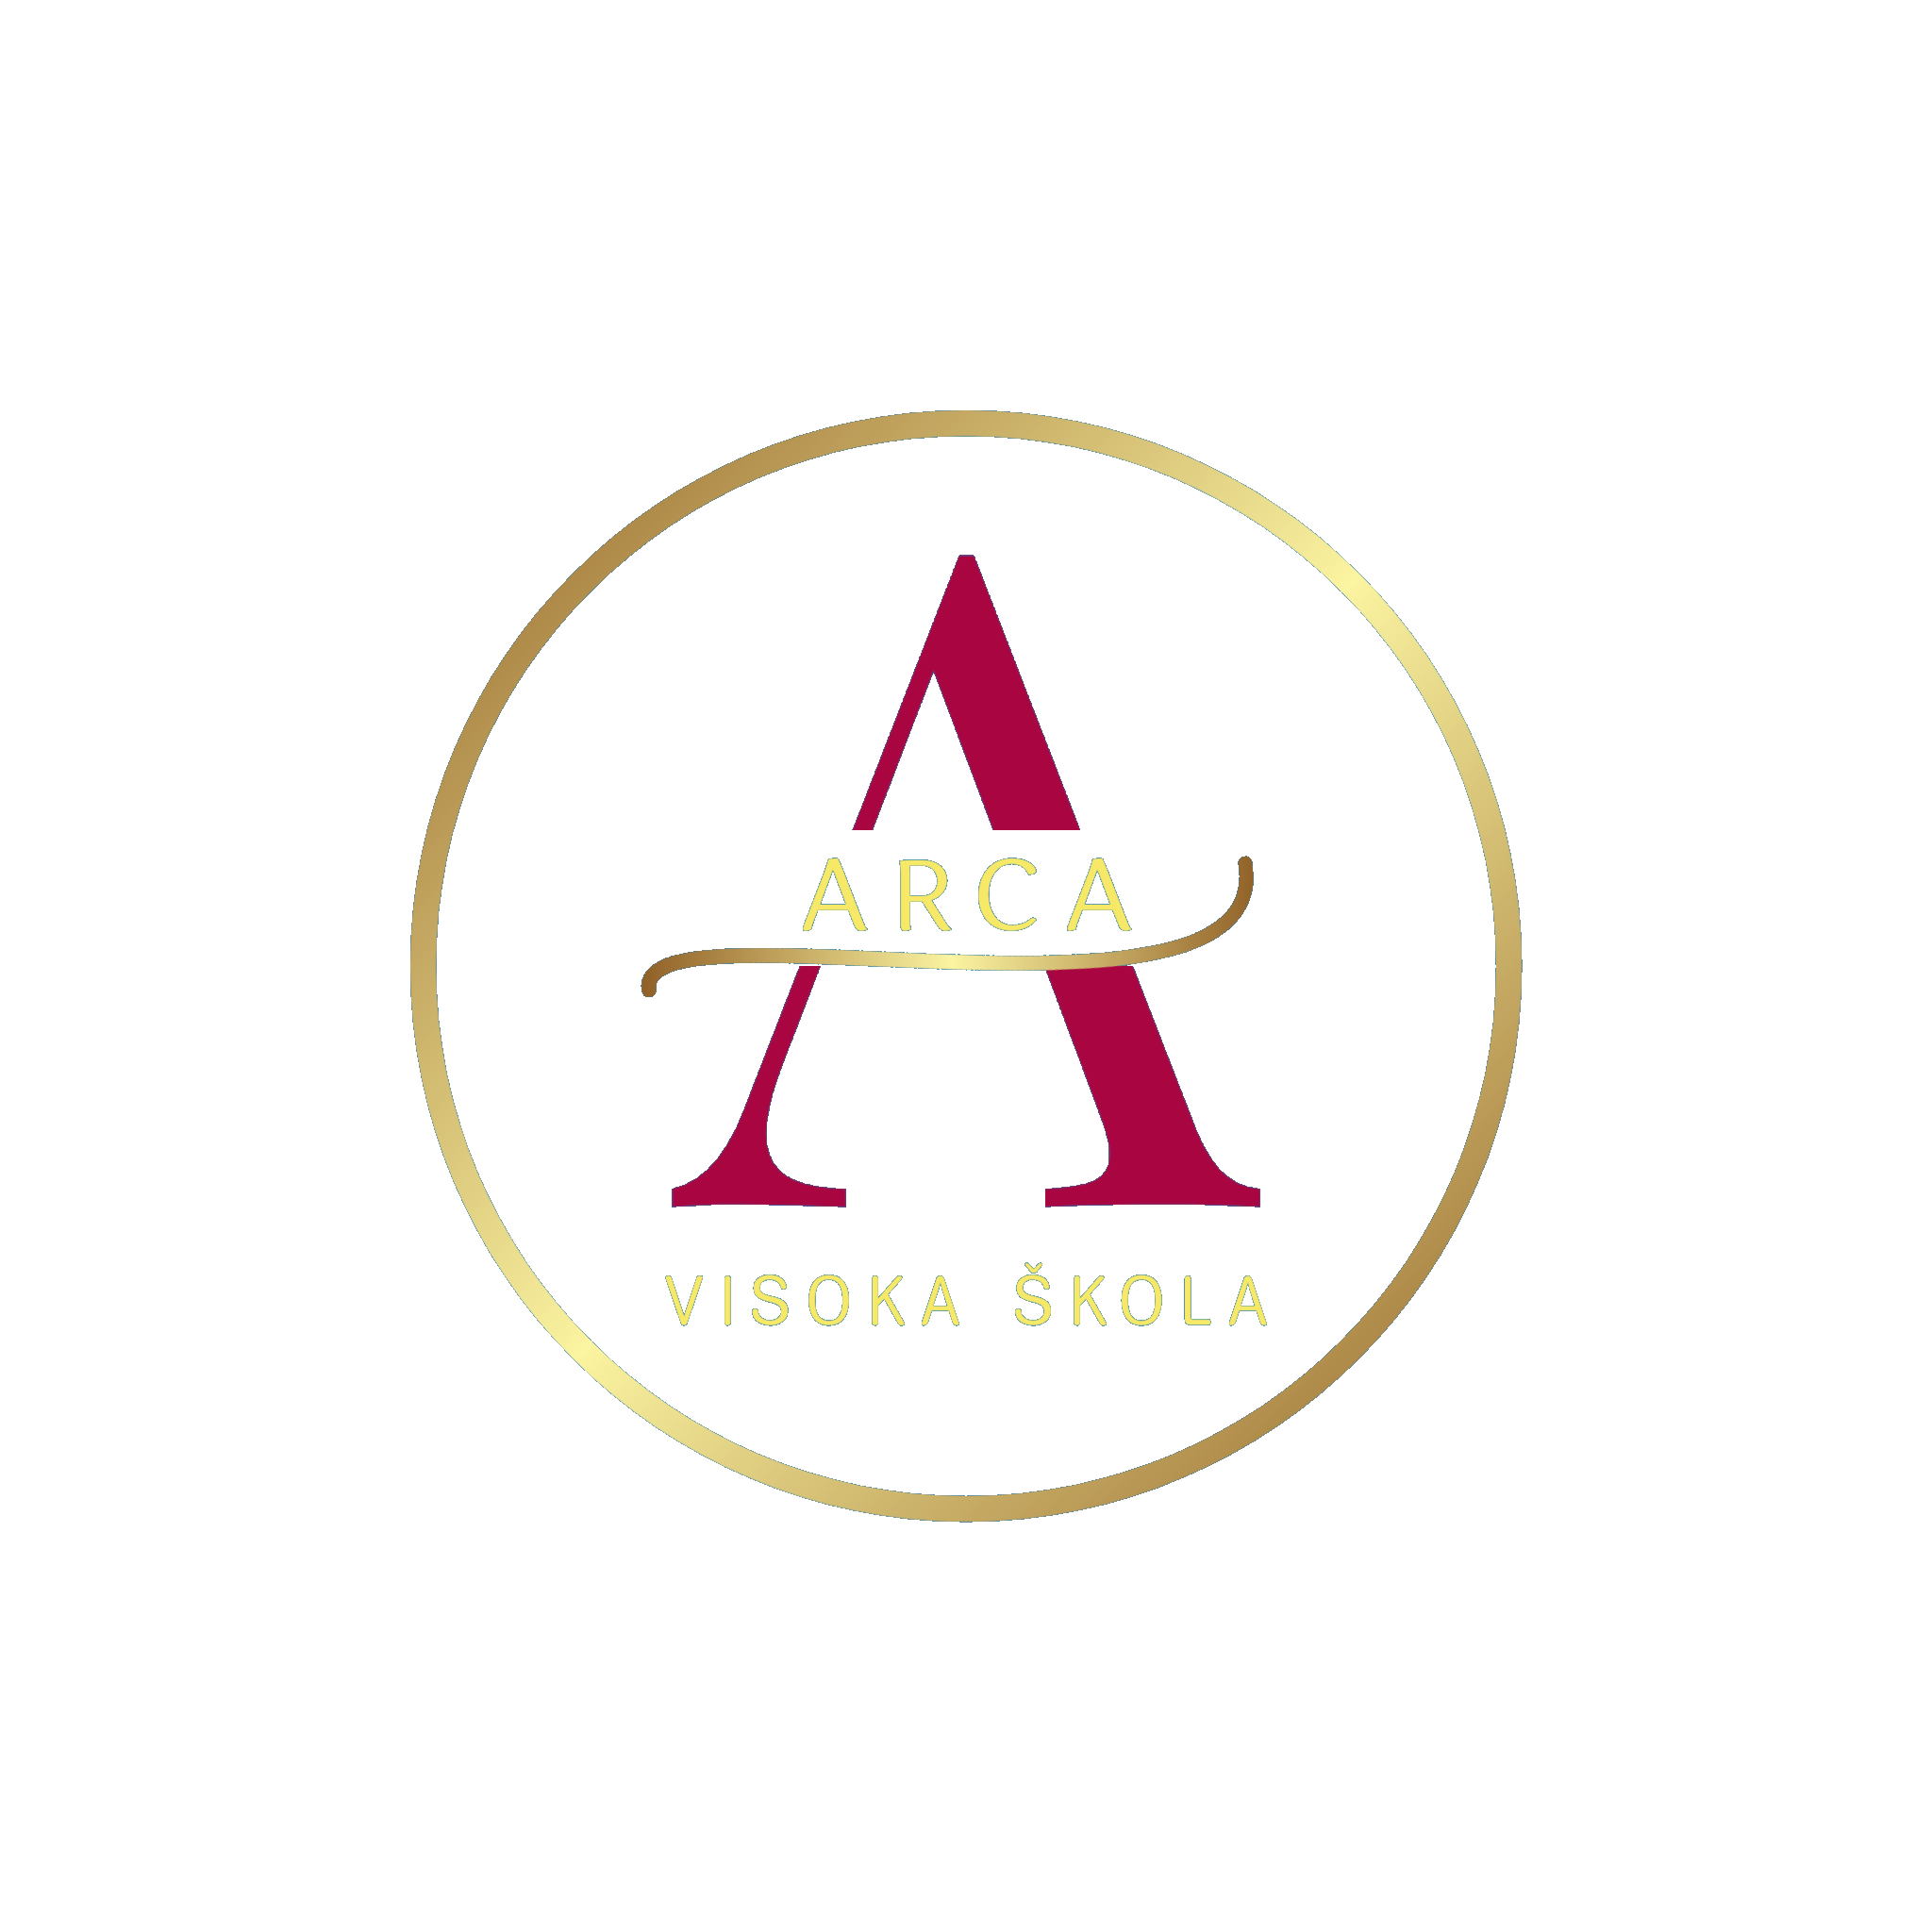 Die Croatia Agentur Marketing za sve half Arca dabei, sein Geschäft mit SEO und digitalem Marketing zu vergrößern